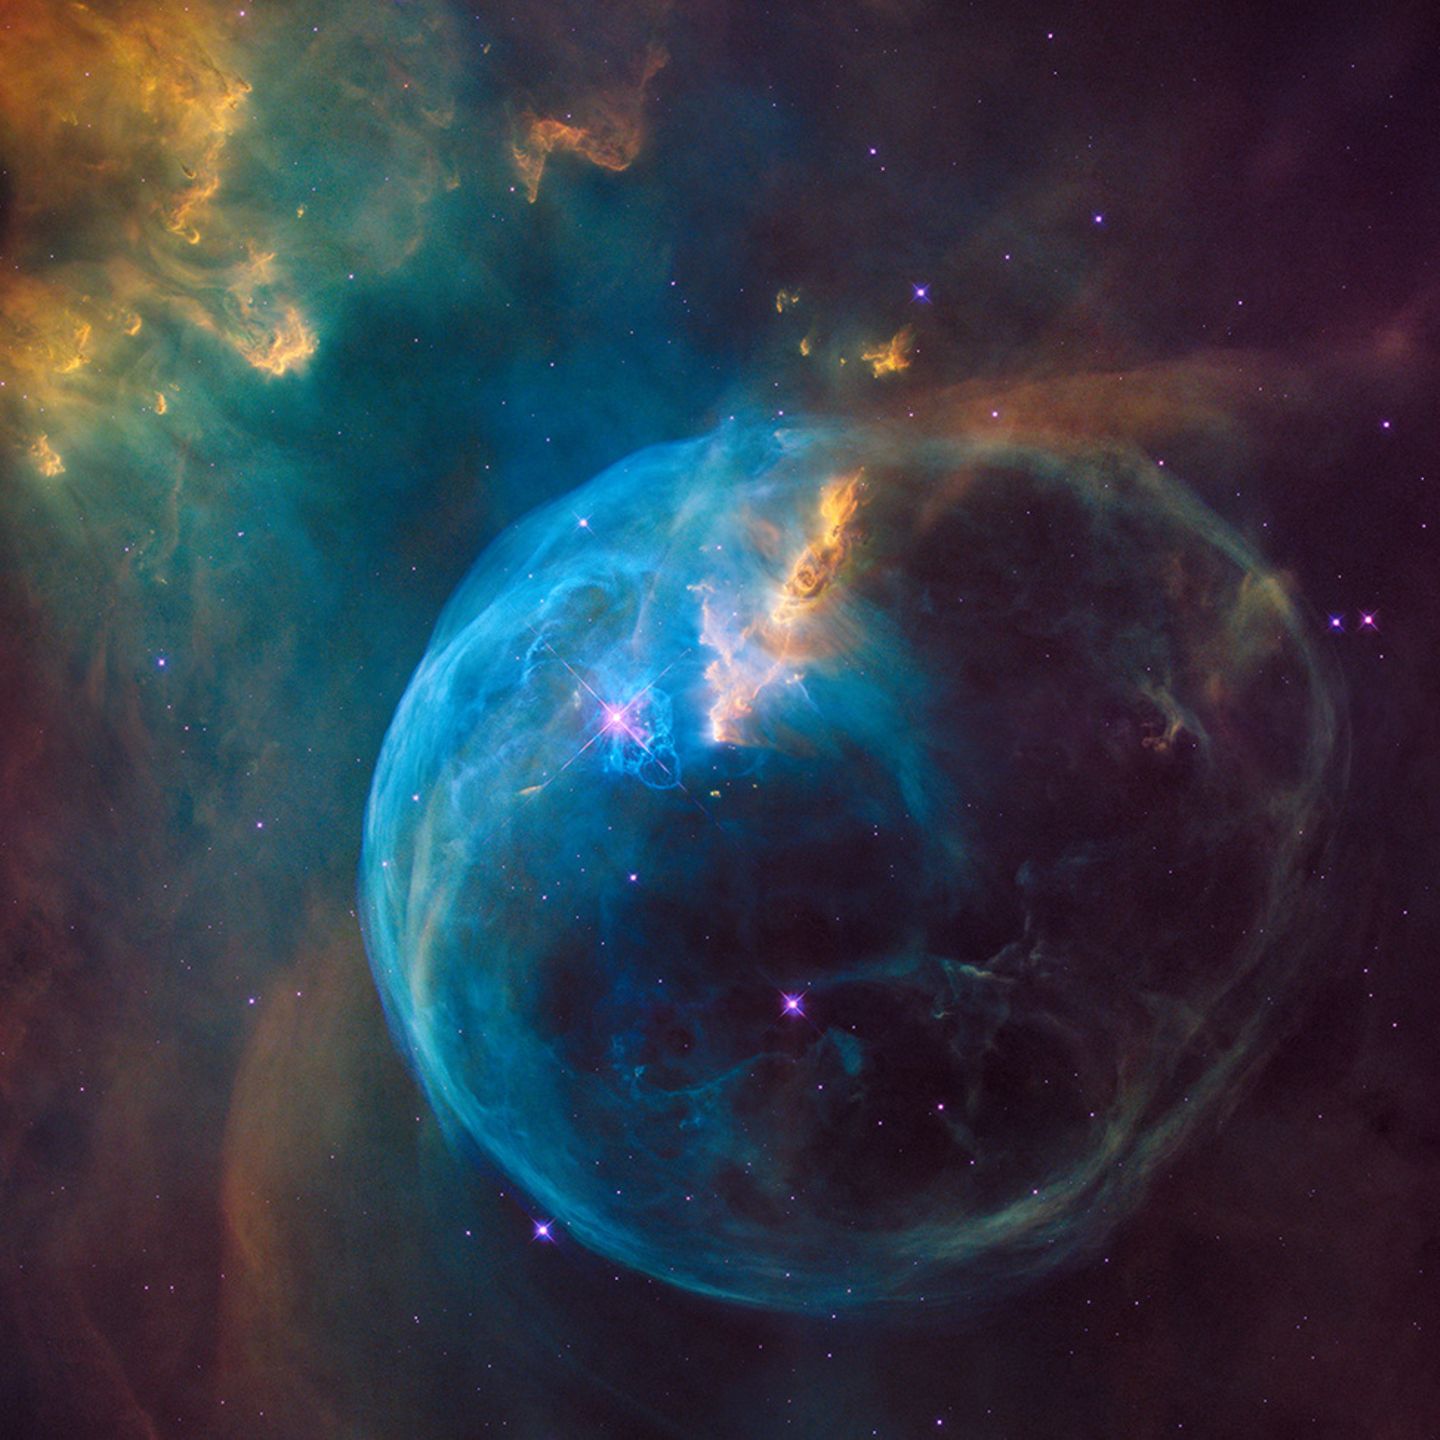 Kosmischer Kreislauf: Hier schleudert ein junger Stern (Mitte, etwa bei zehn Uhr, glitzernd) gewaltige Mengen an Gas (blau) ins All. Darunter auch Substanzen, die zuvor in seinem Inneren entstanden sind und nun als Rohmaterial für neue Himmelskörper dienen